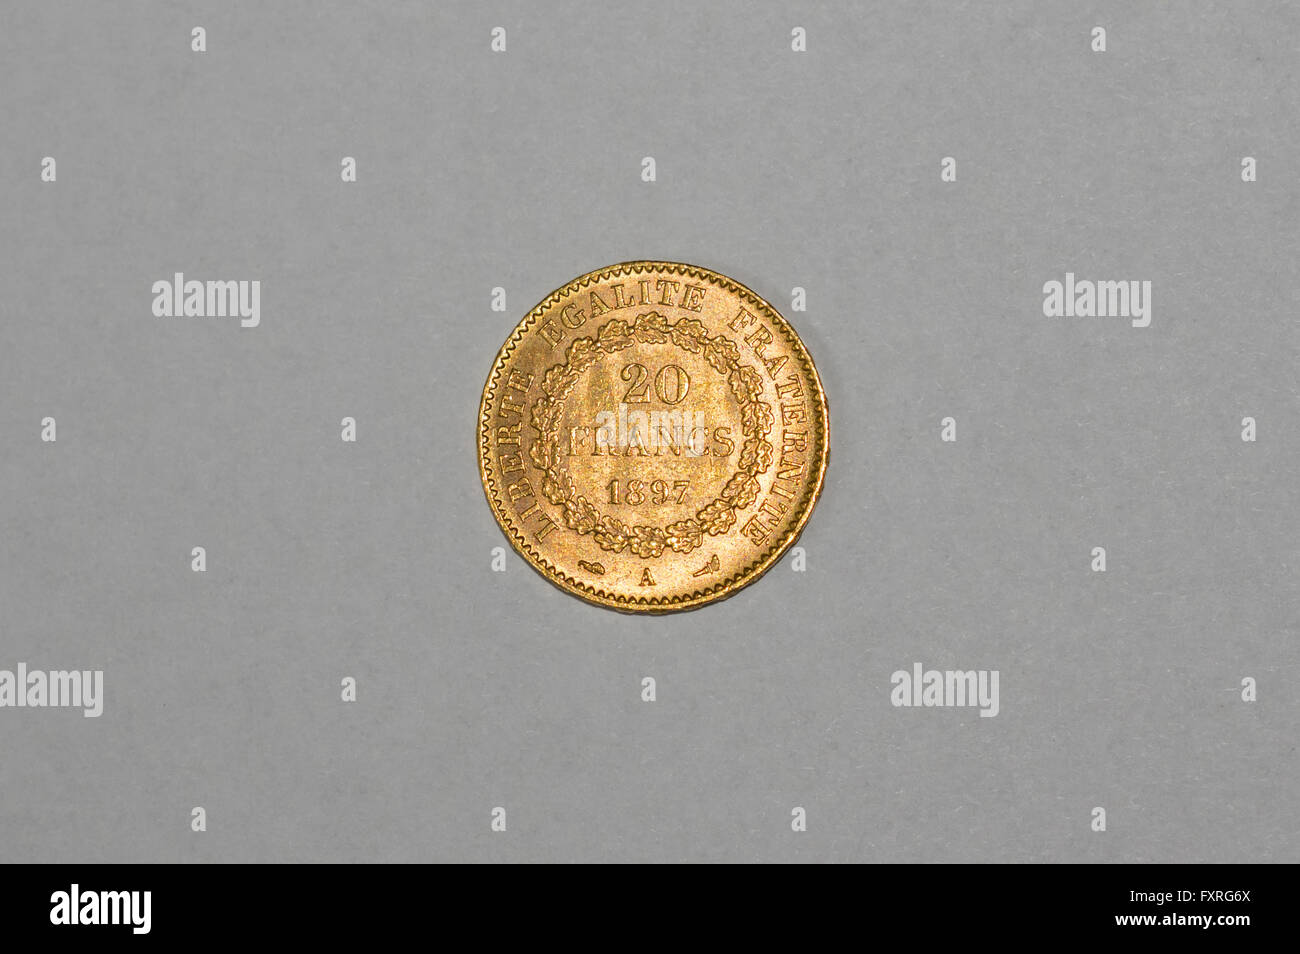 19. Jahrhundert Französisch 20 Franken gold Münze, im Jahre 1897 geprägt. Auf der Rückseite mit Motto "Liberté Fraternité Egalité". Stockfoto